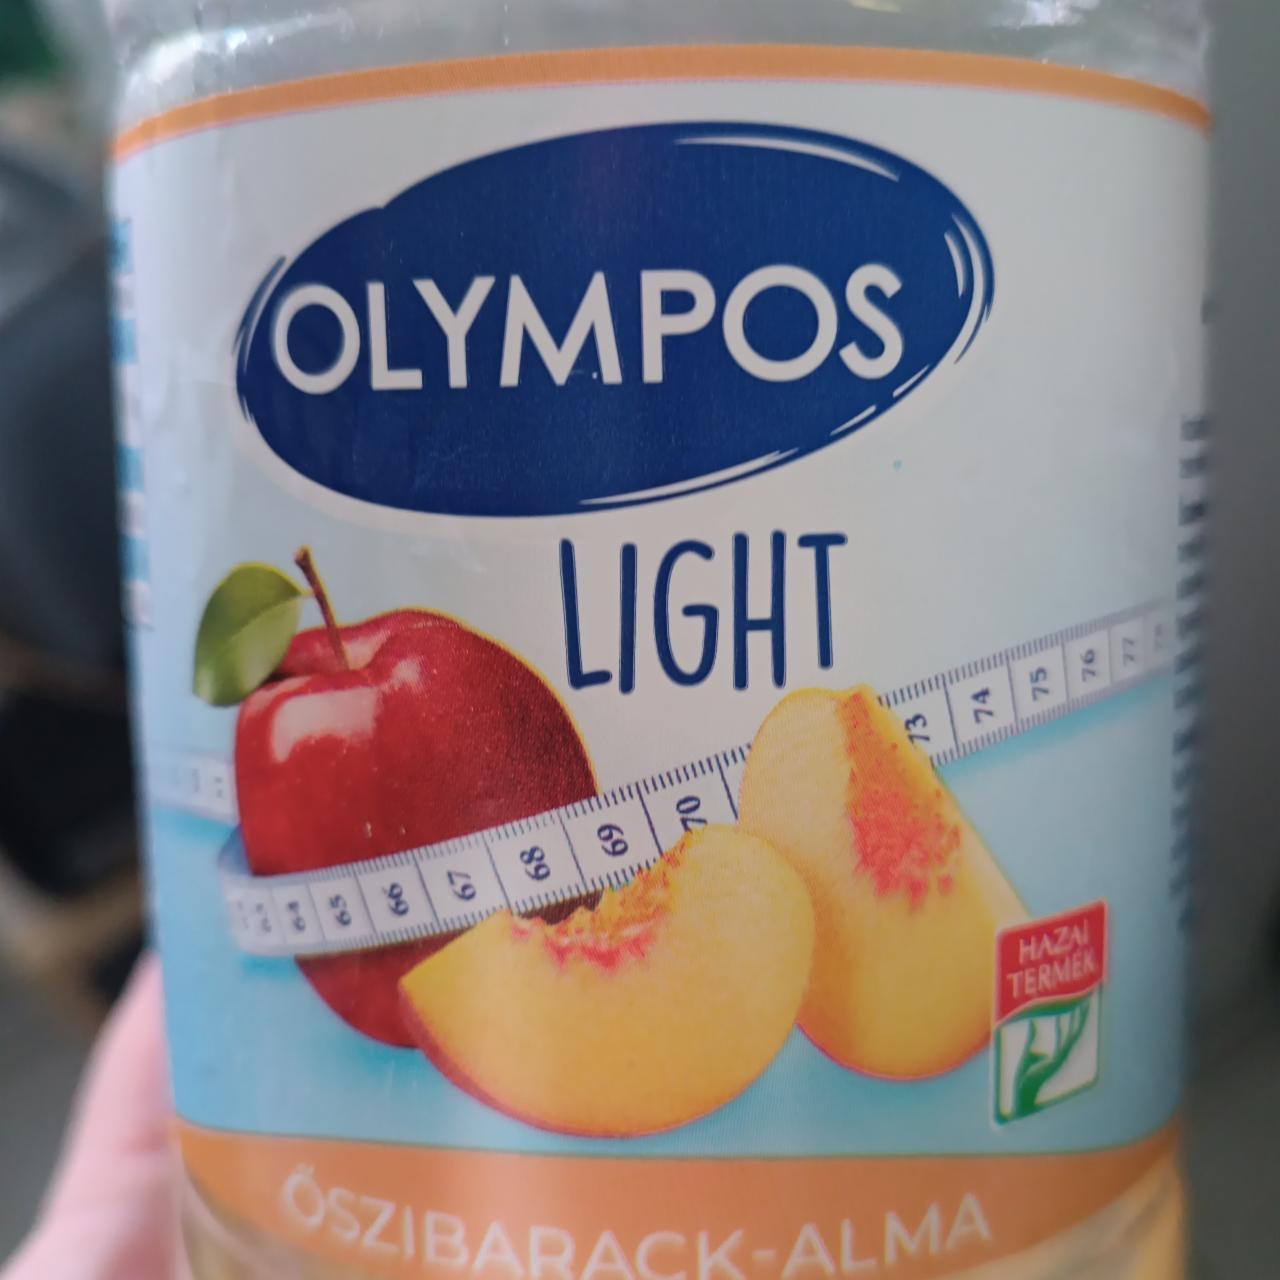 Képek - Őszibarack-alma light Olympos